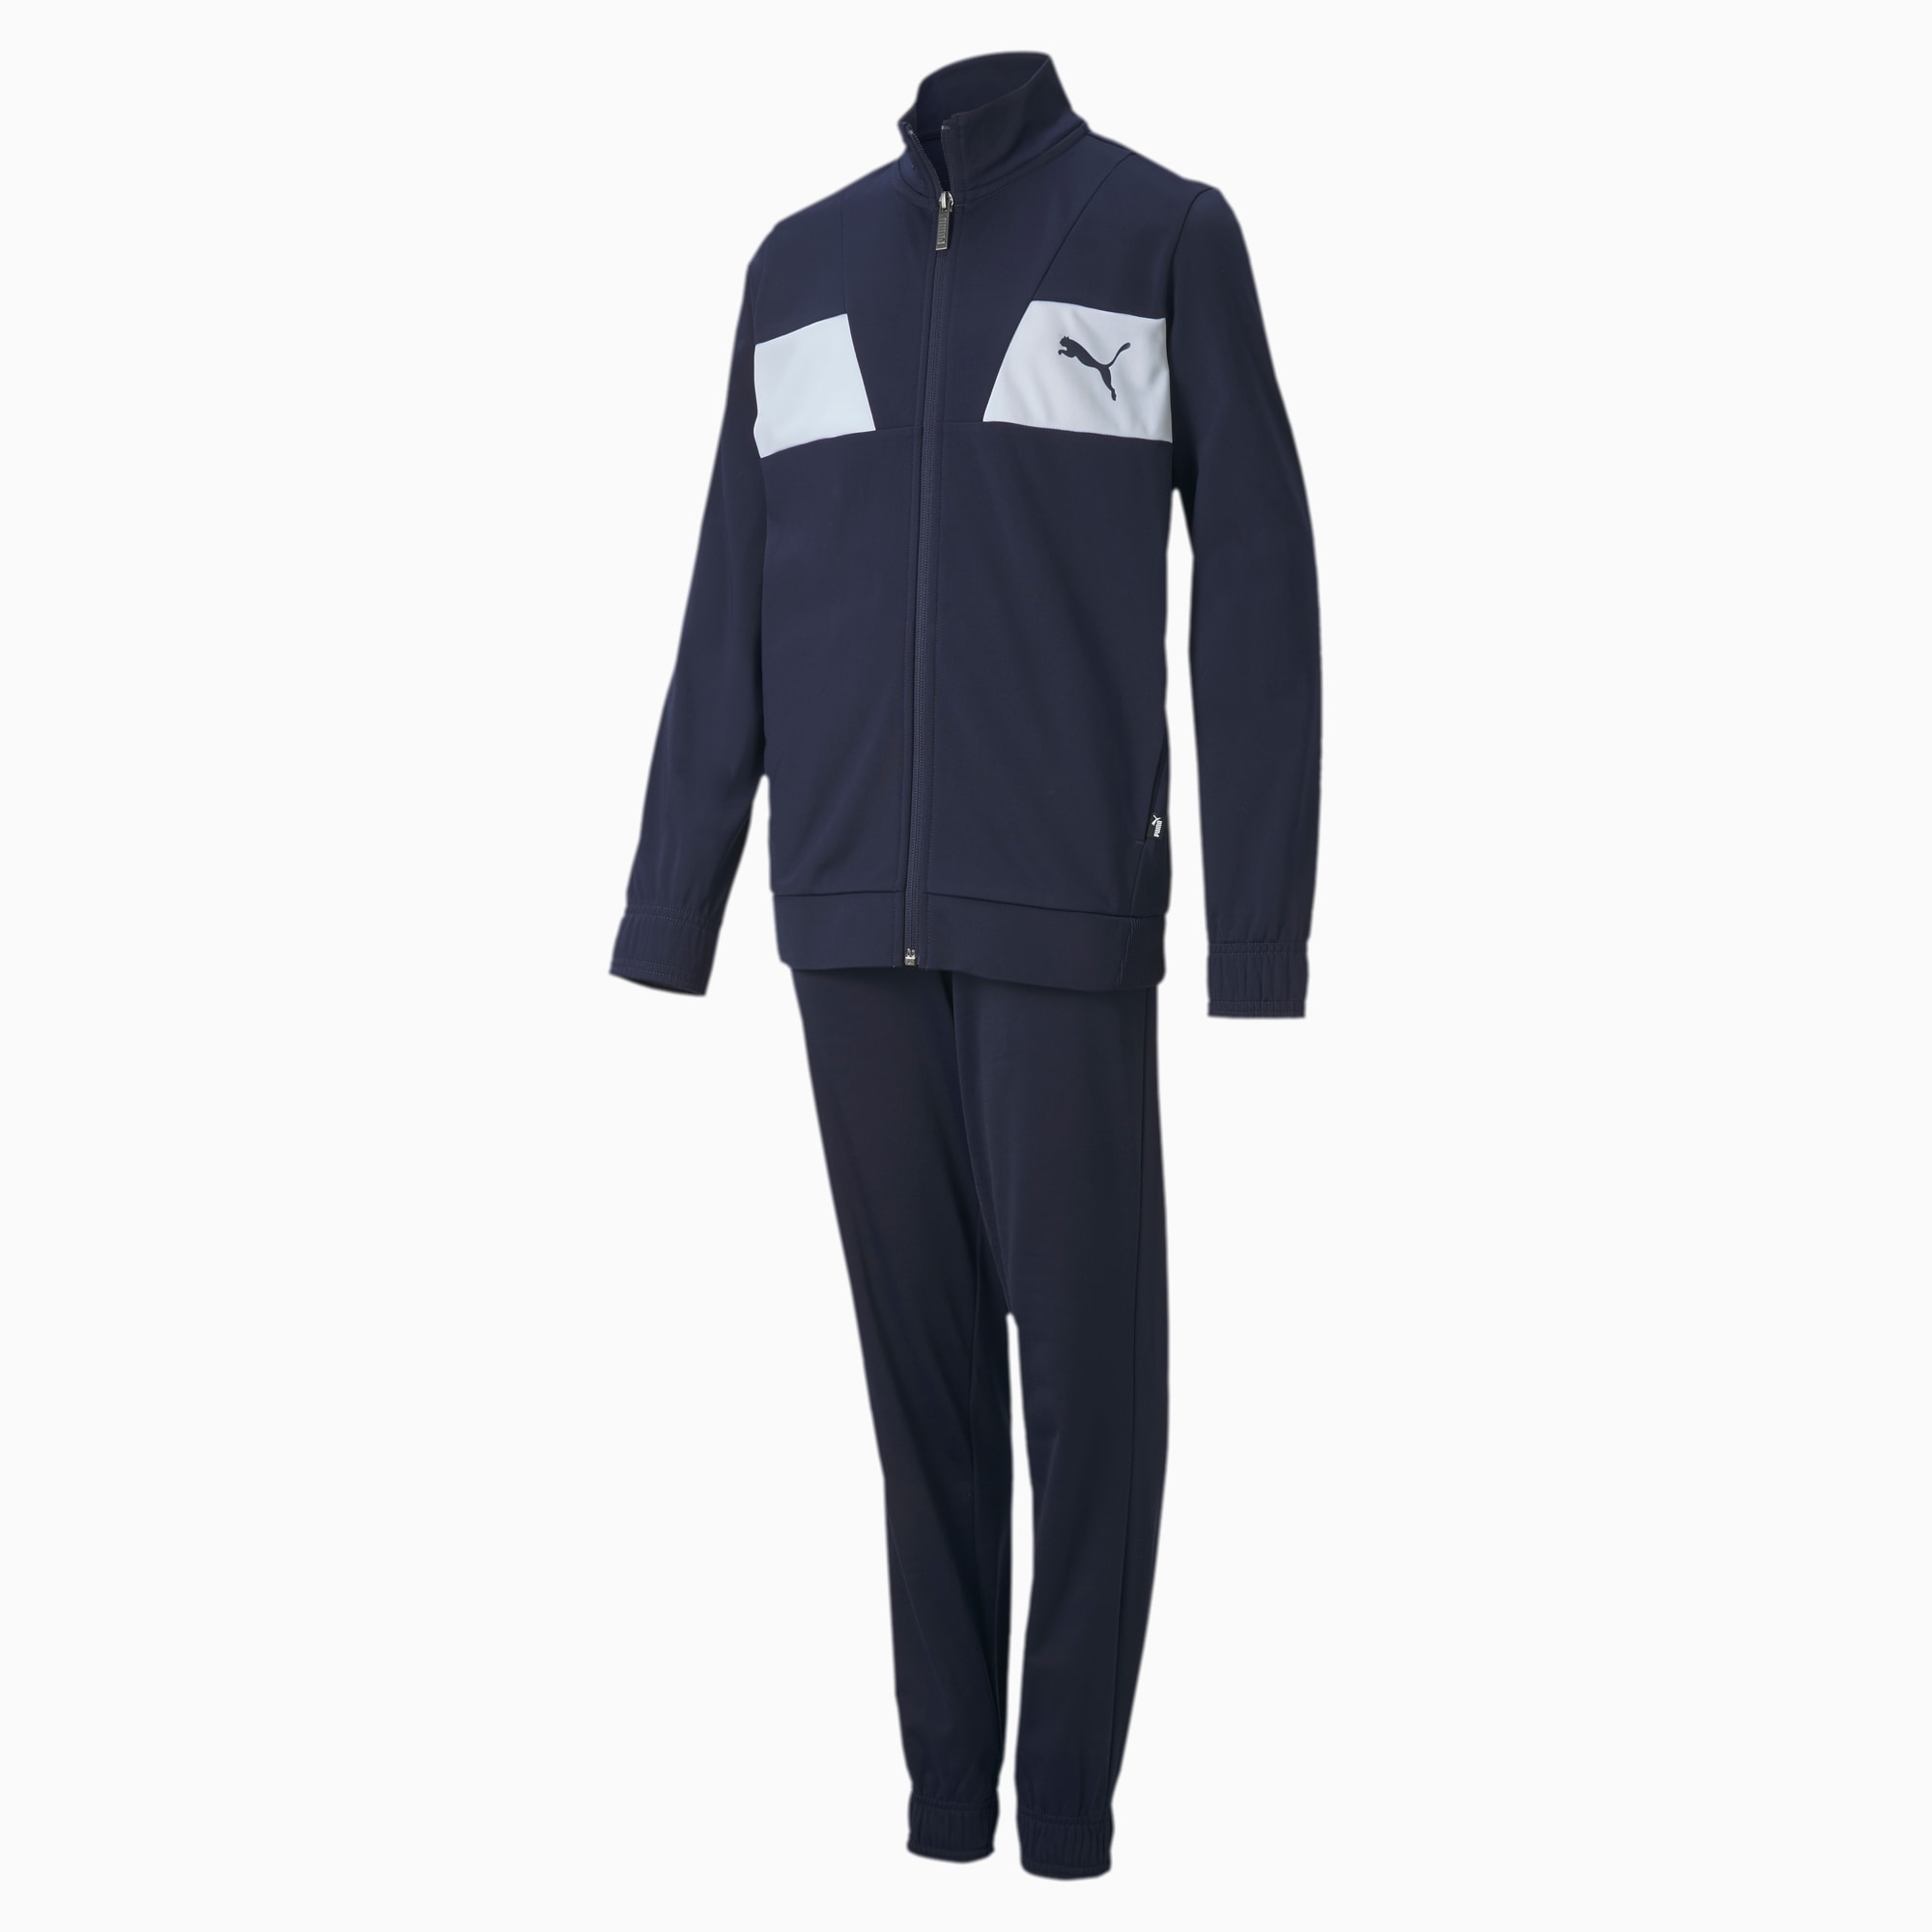 Image of PUMA Polyester Jugend Trainingsanzug Für Kinder | Mit Aucun | Blau | Größe: 104